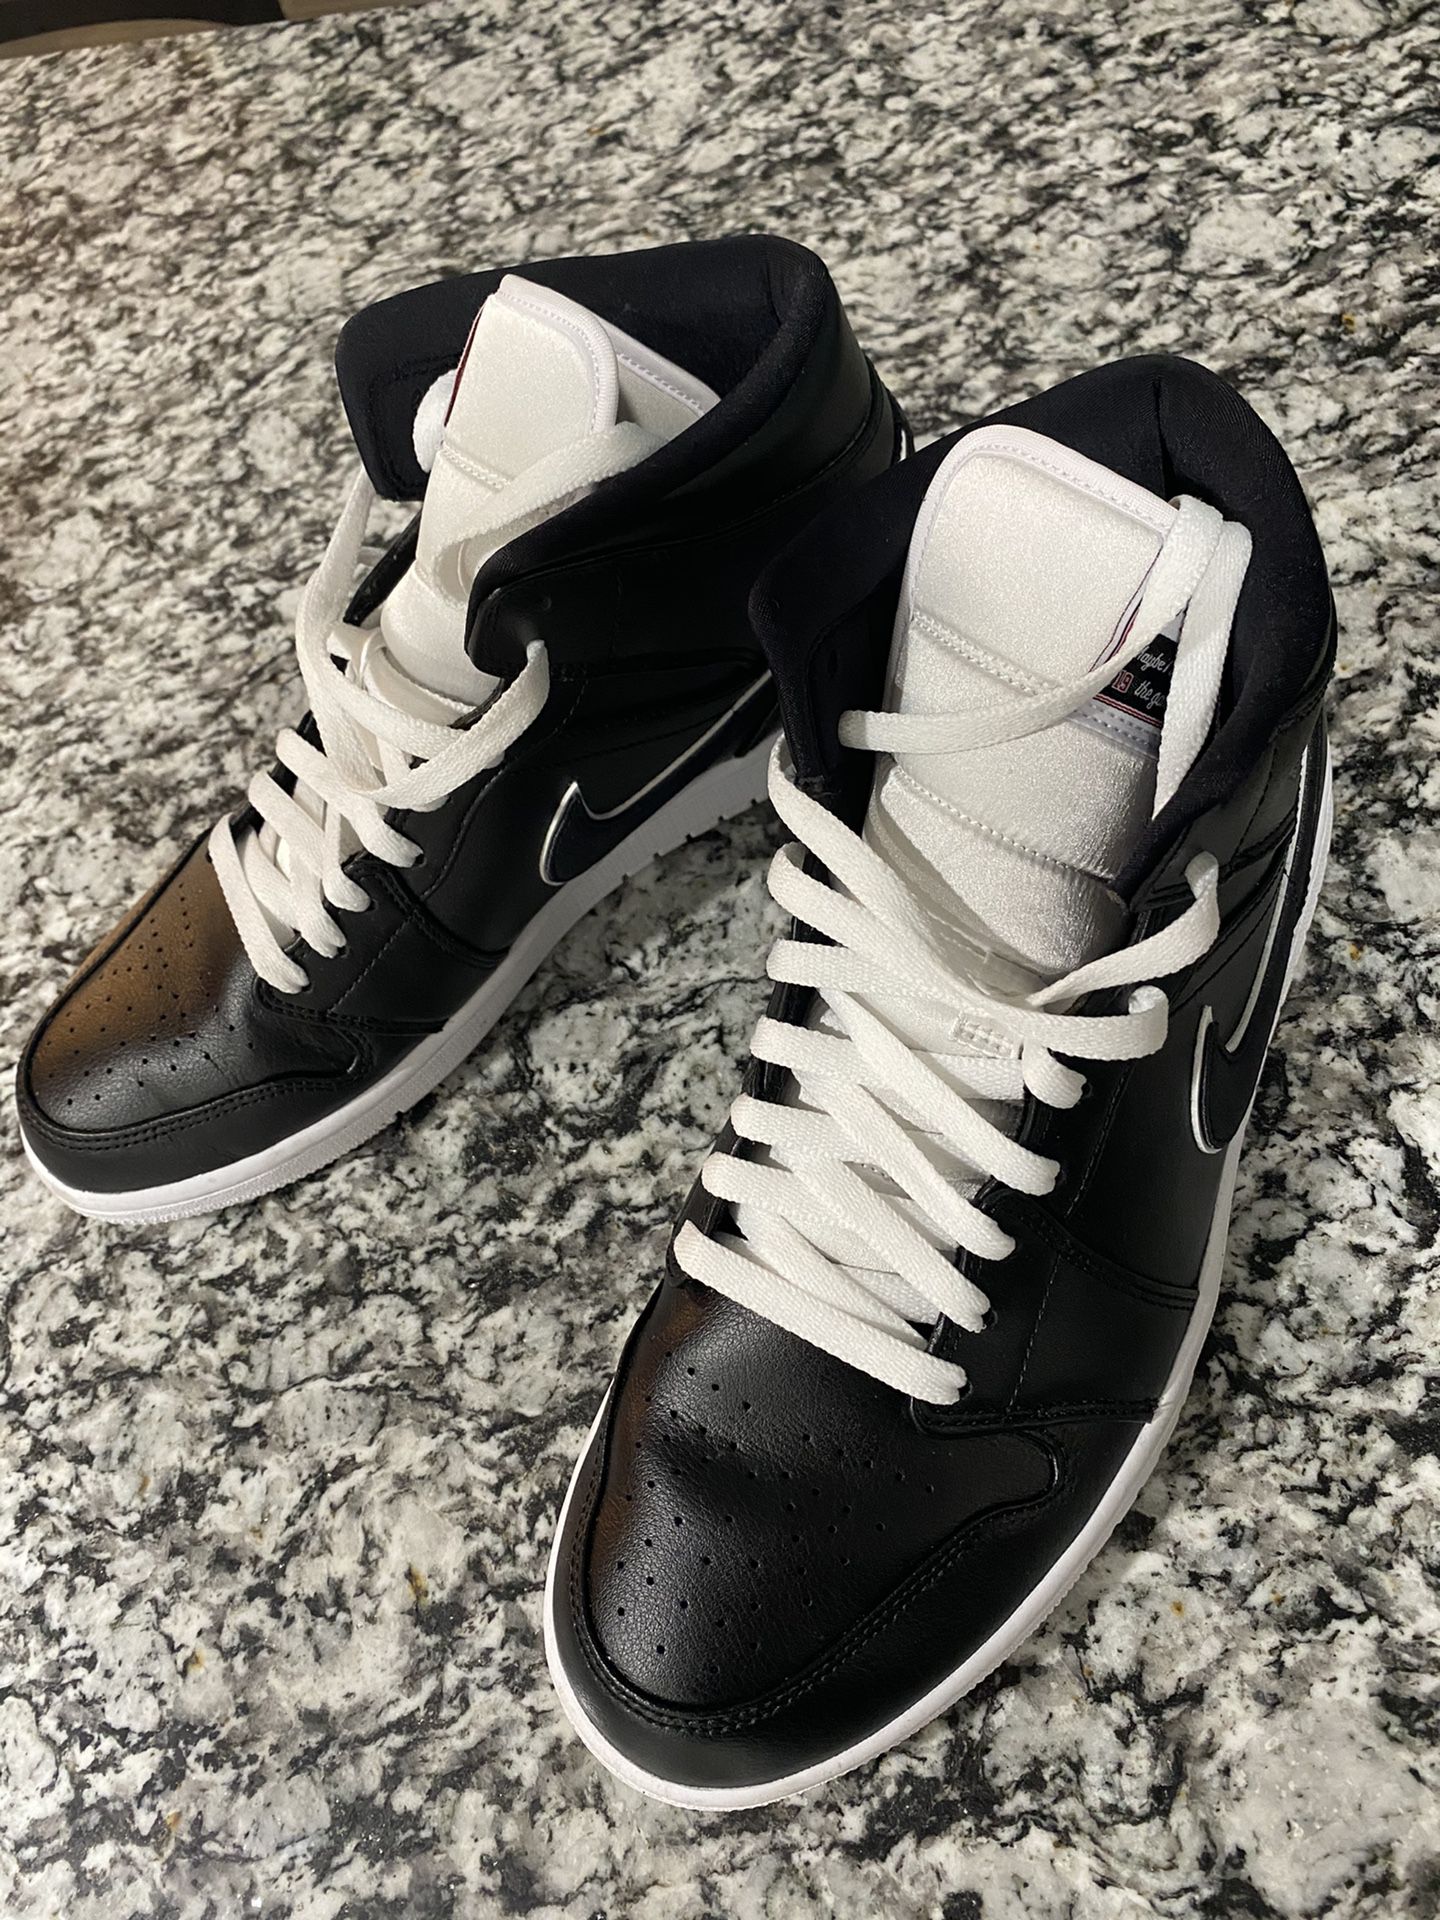 Air Jordan 1 Mid SE Men’s Shoe Size 11